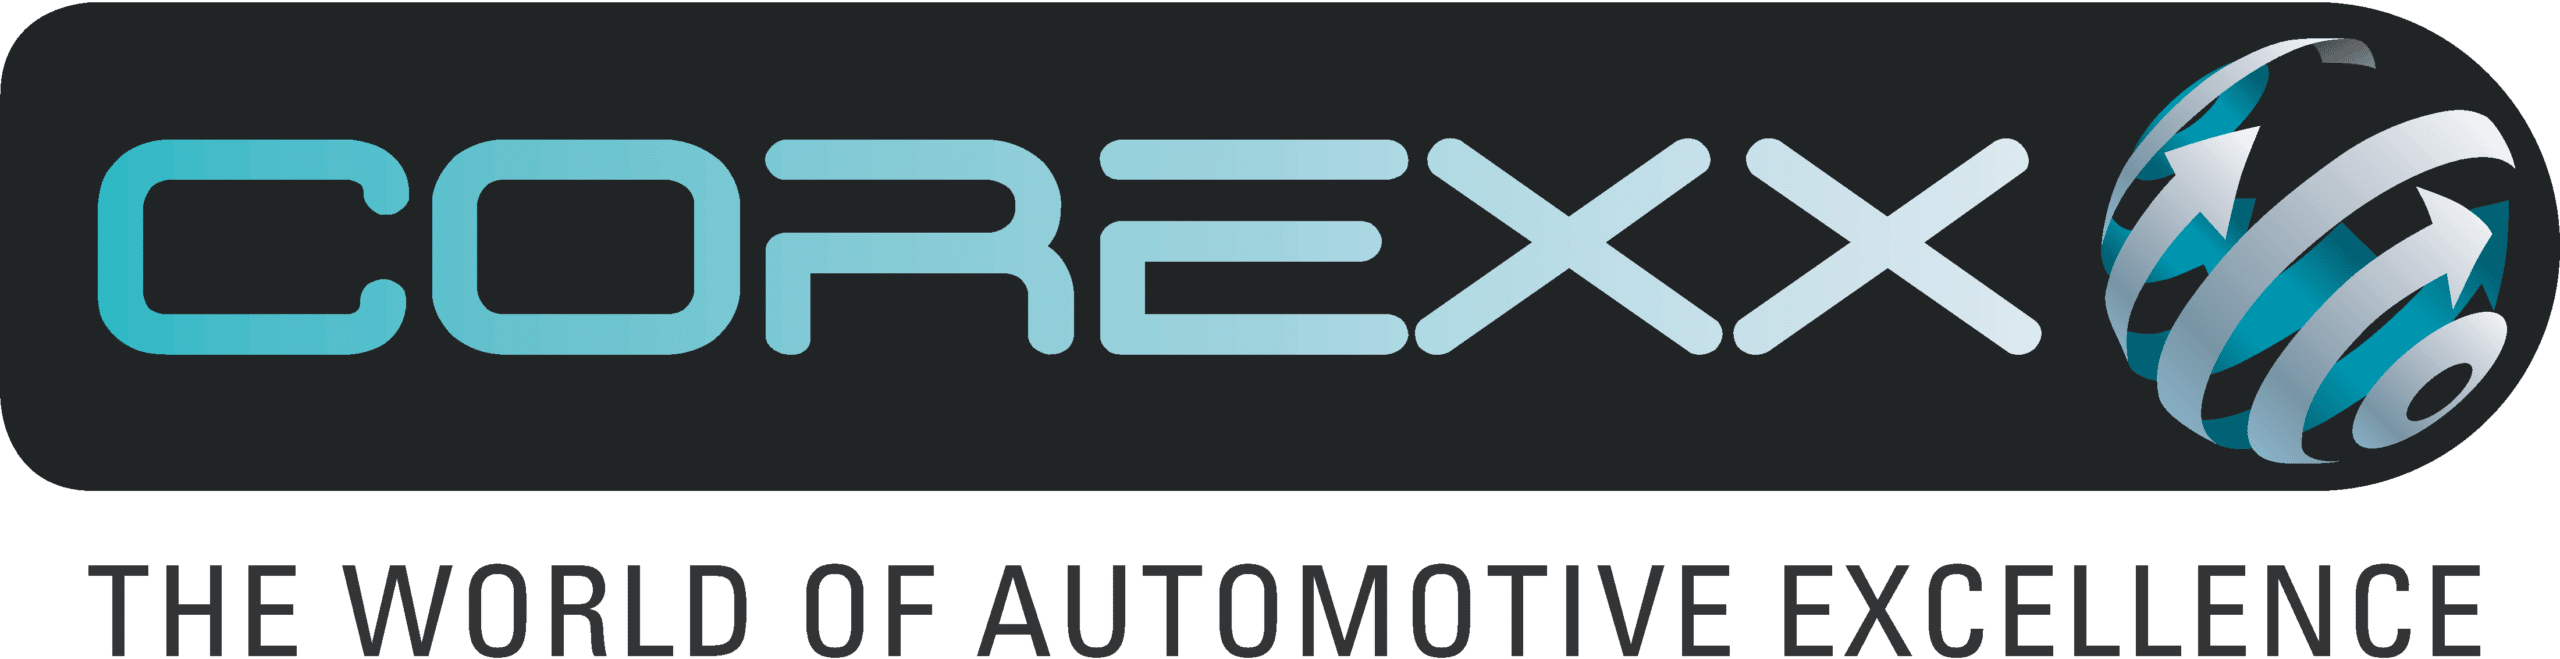 corexx-logo